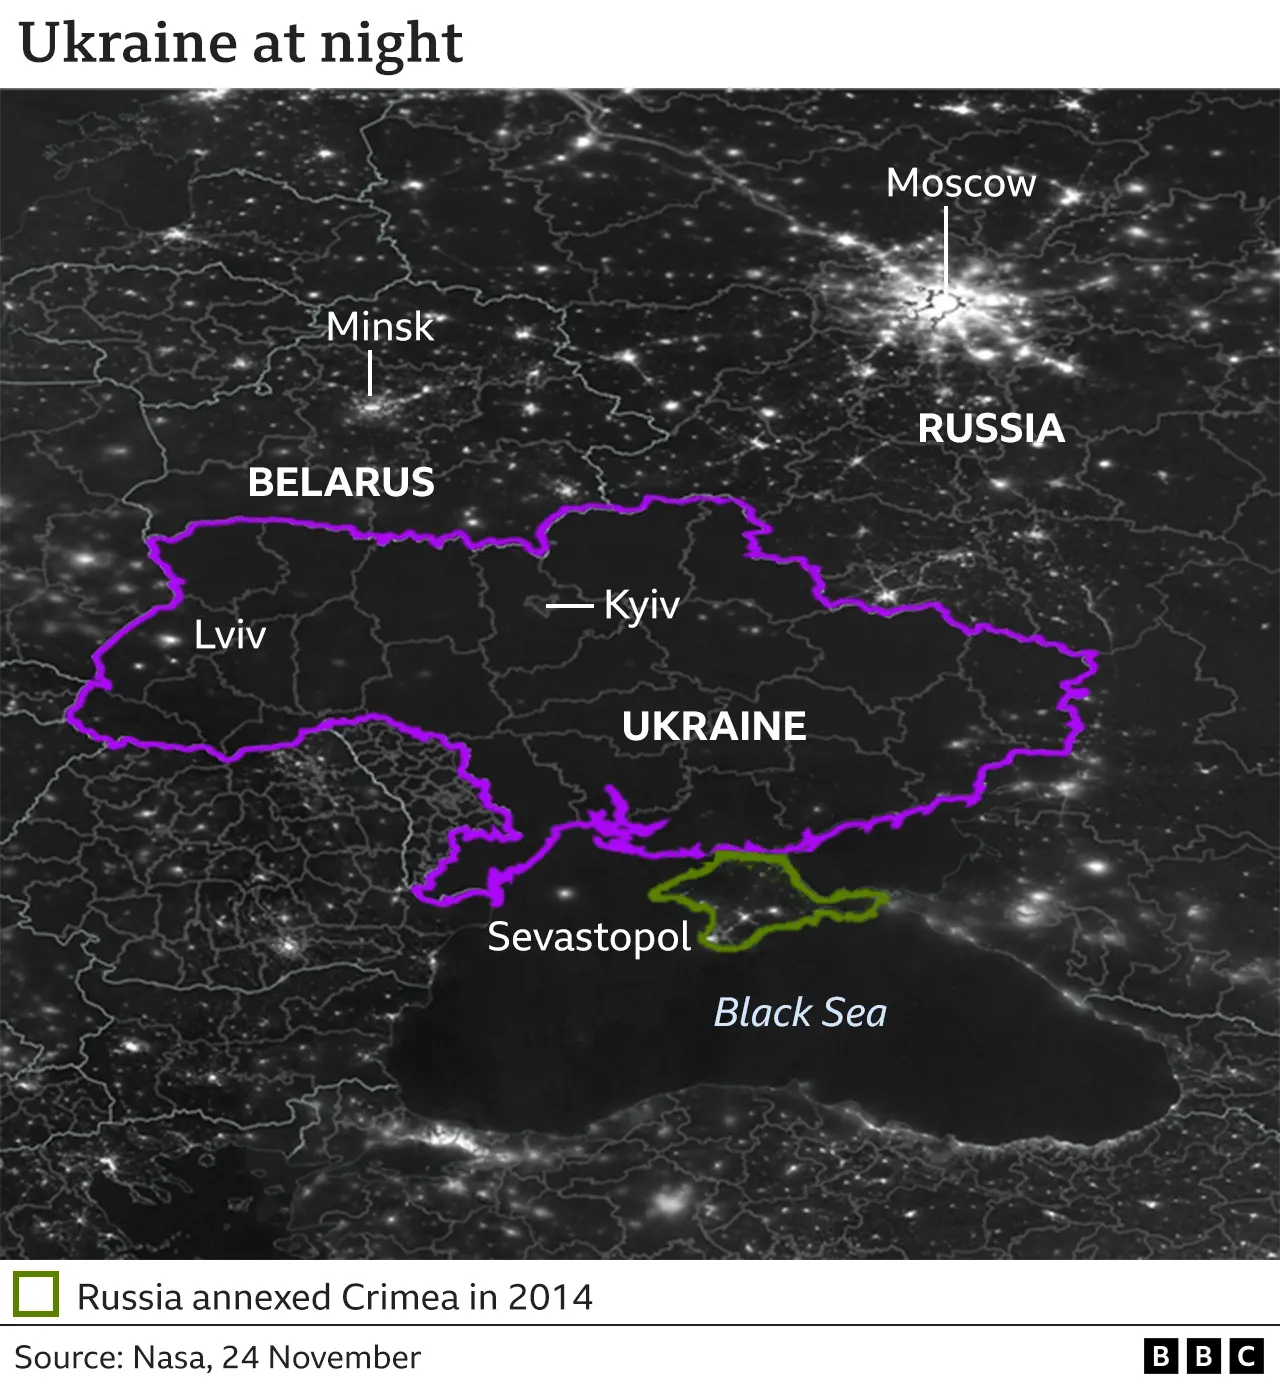 _127784435_ukraine_night_time_satellite_